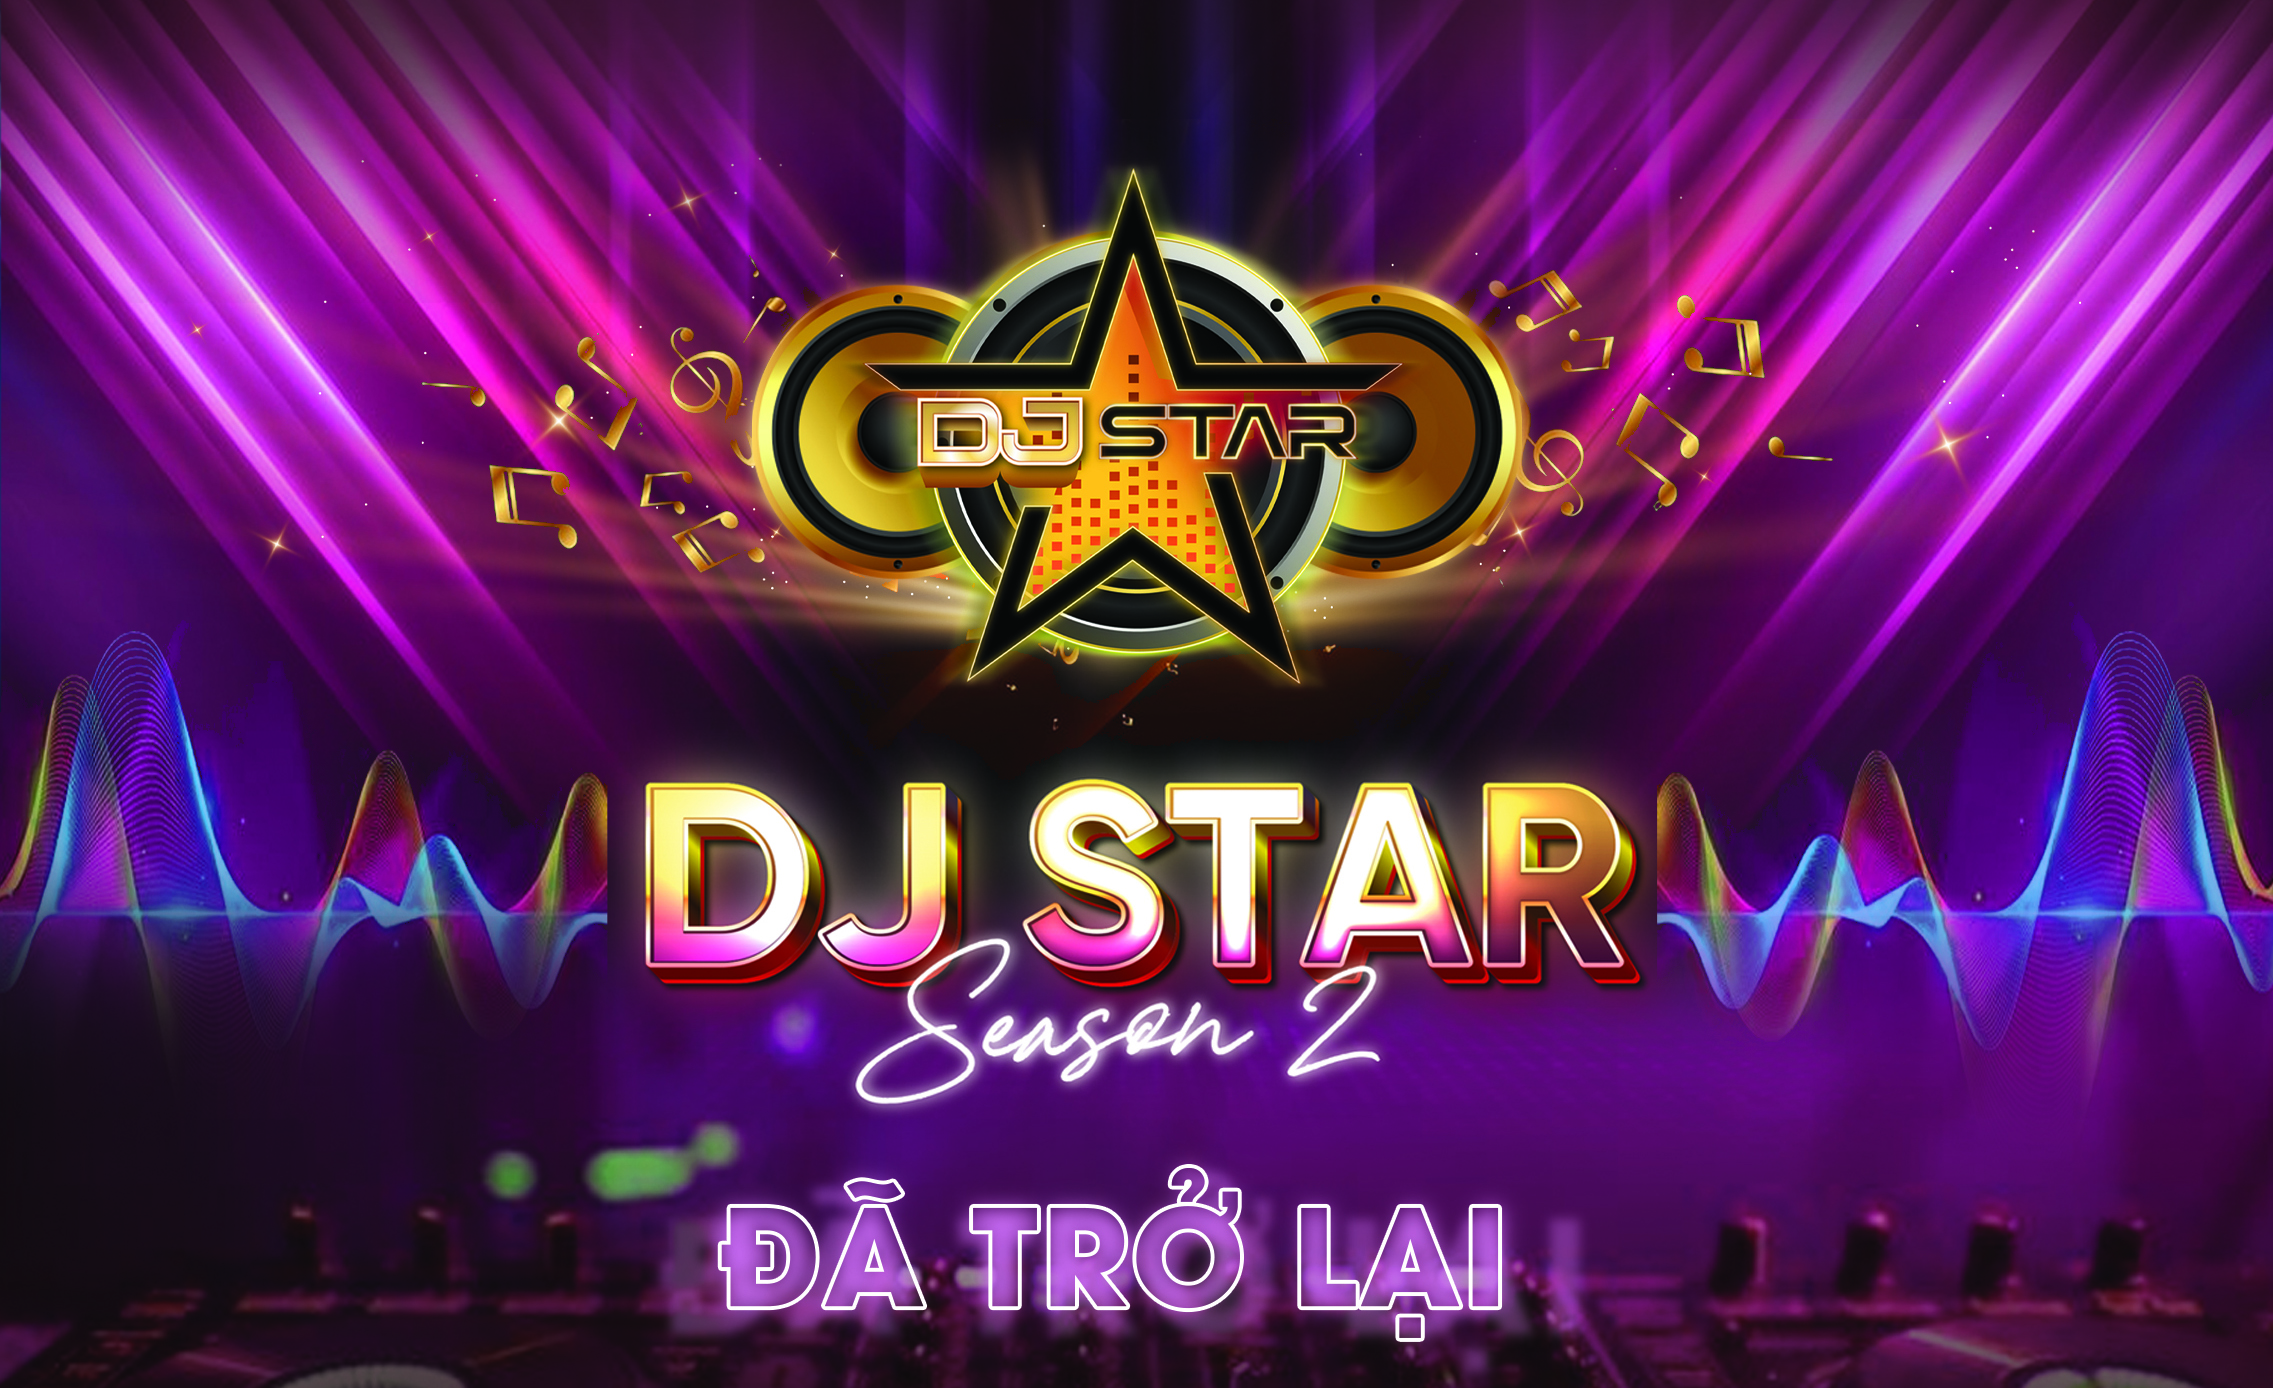 DJ Star mùa 2 trở lại trên VTVcab